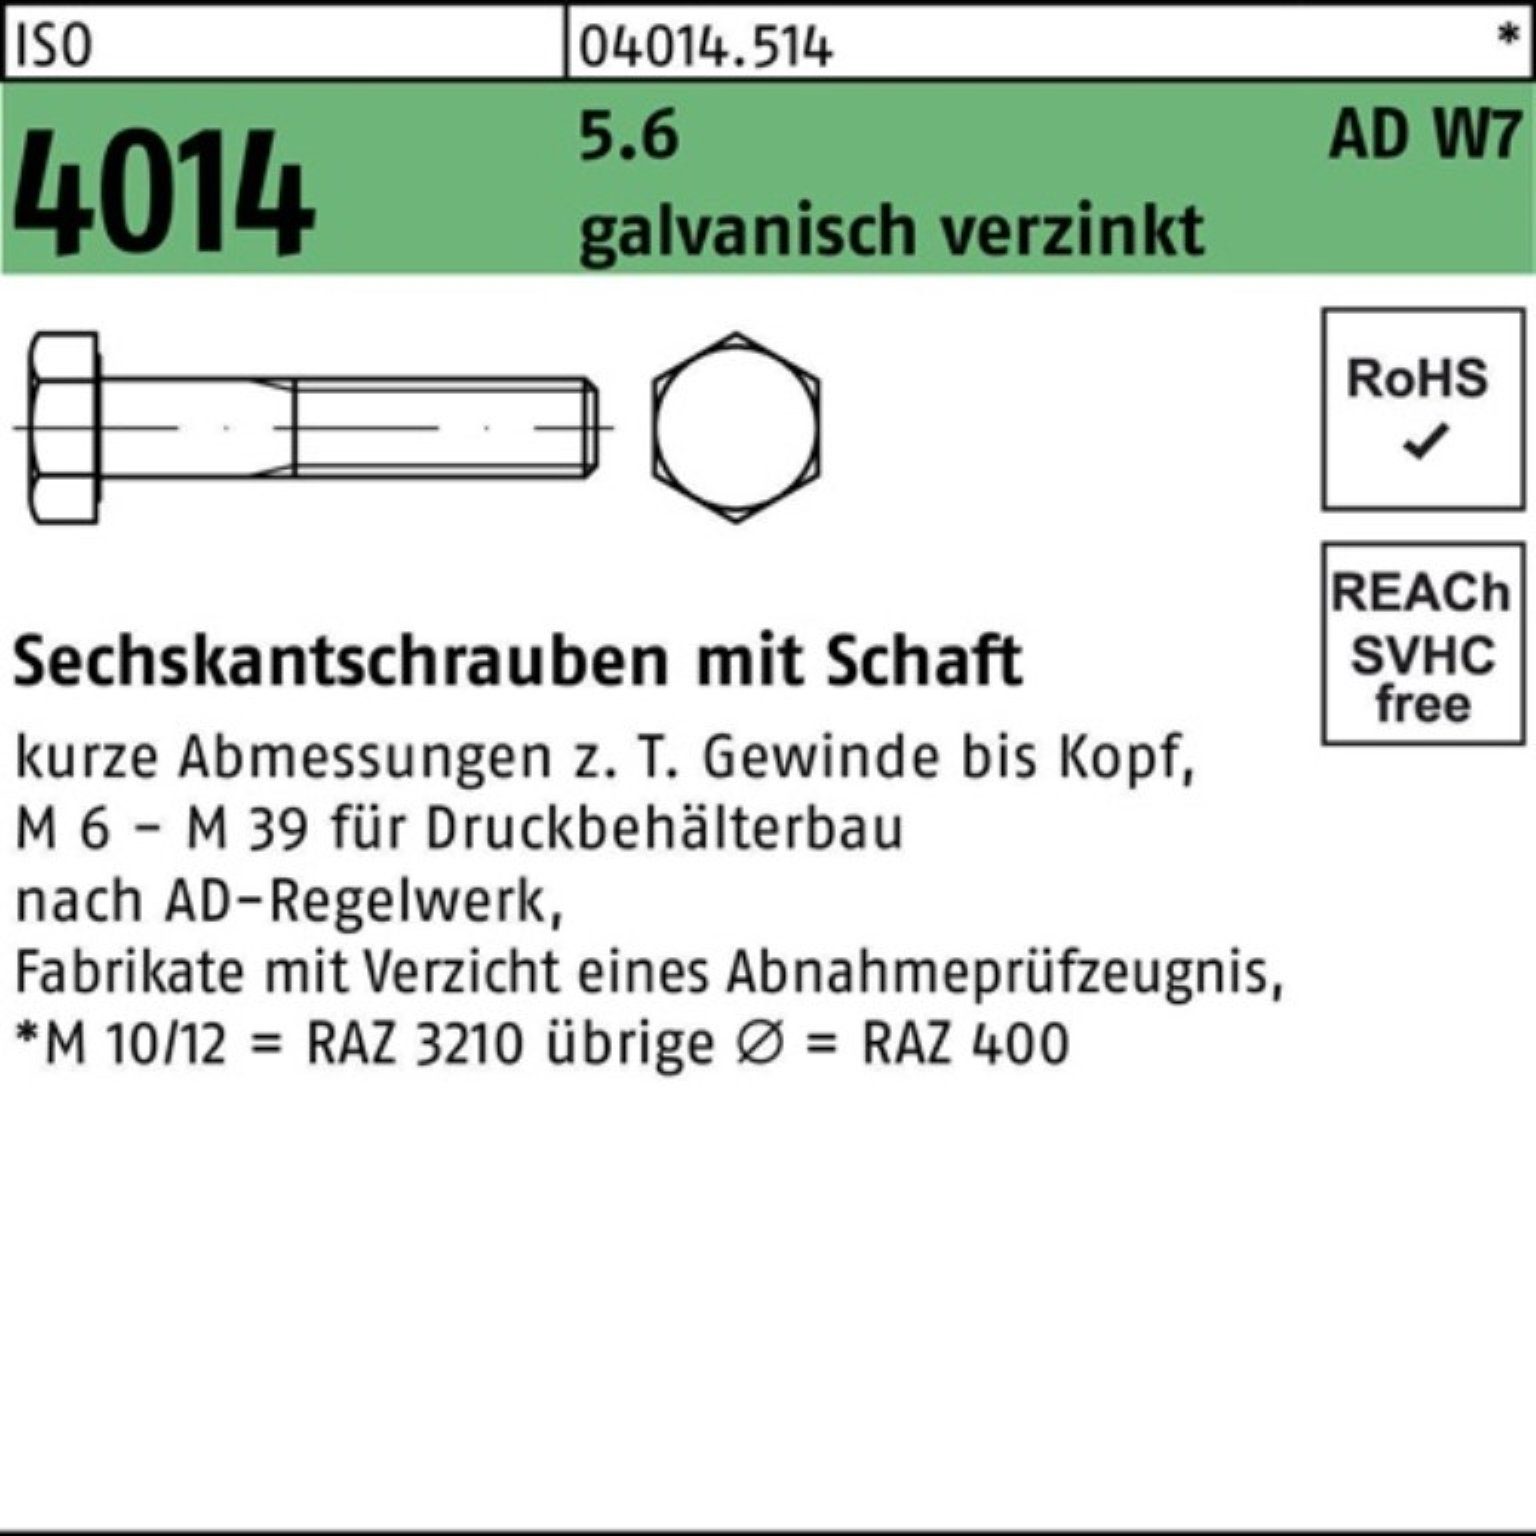 ISO Sechskantschraube 4014 M12x 100er 120 W7 Schaft galv.verz Bufab 5.6 Sechskantschraube Pack